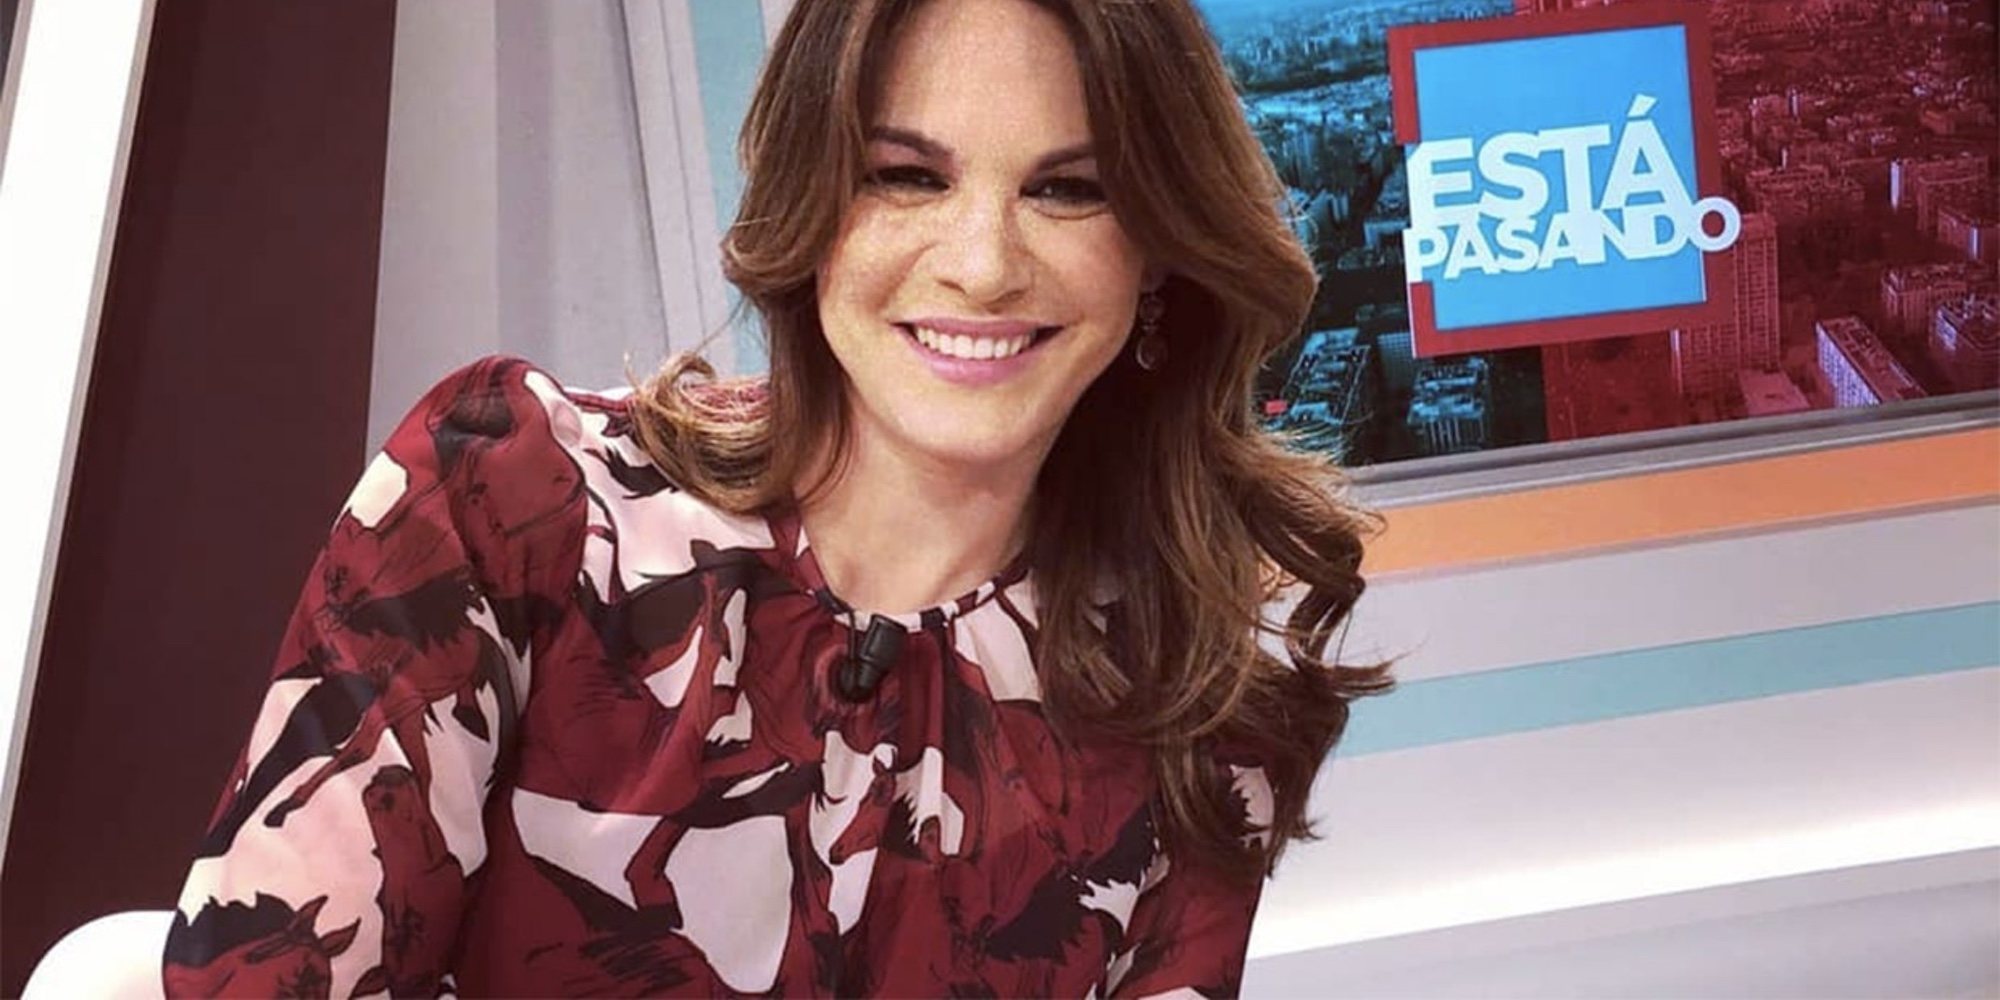 Fabiola Martínez vuelve a la televisión como colaboradora de 'Está pasando' en Telemadrid